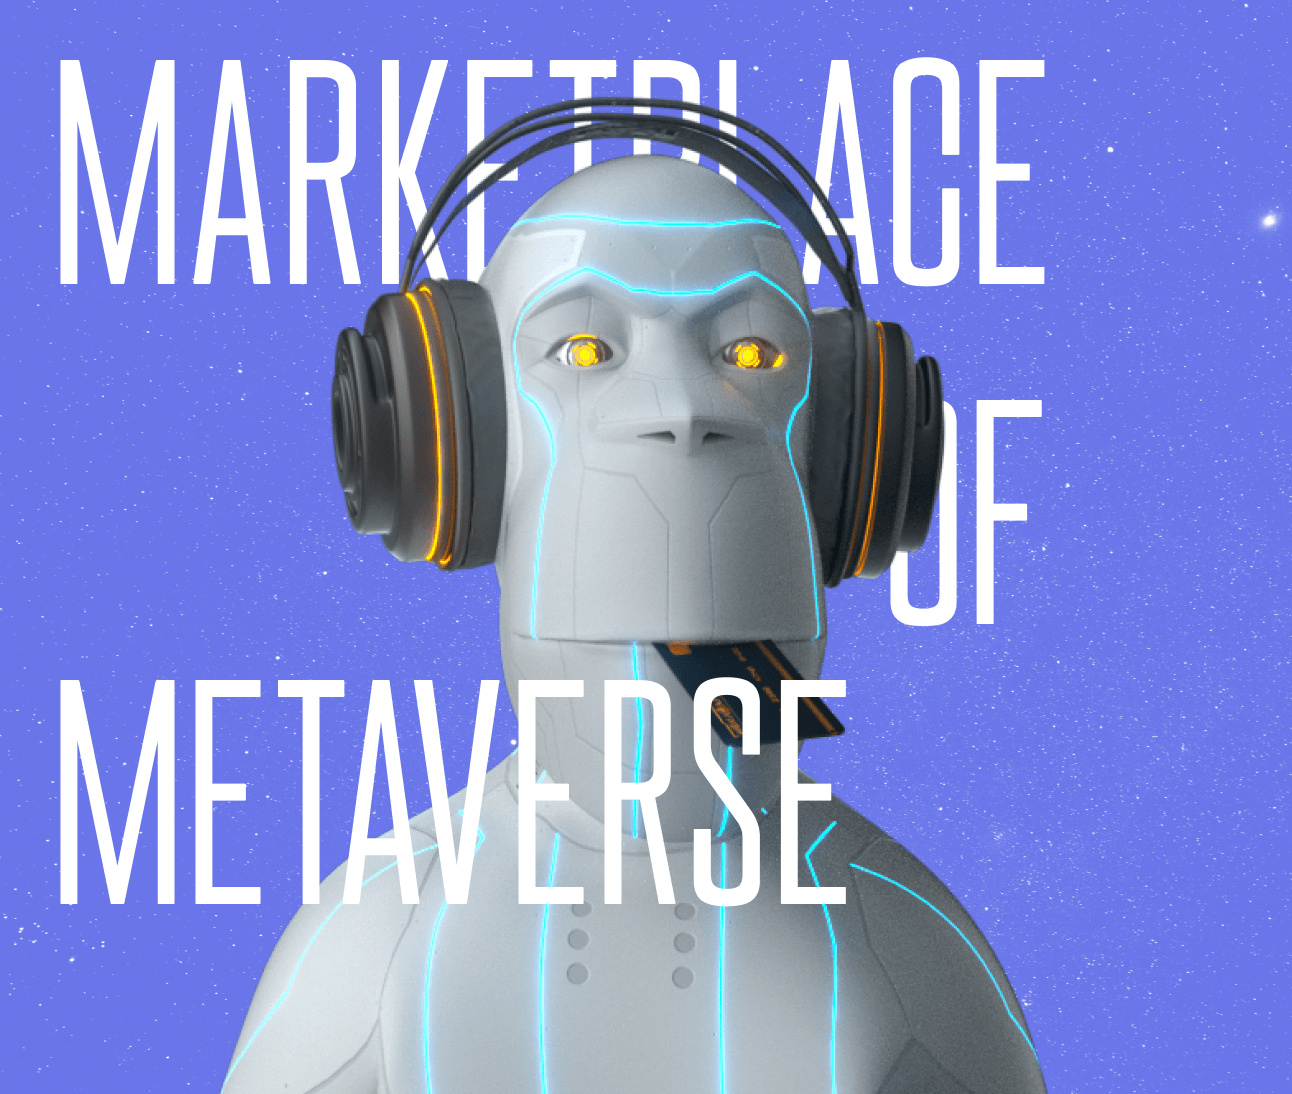 Marketplace of metaverse